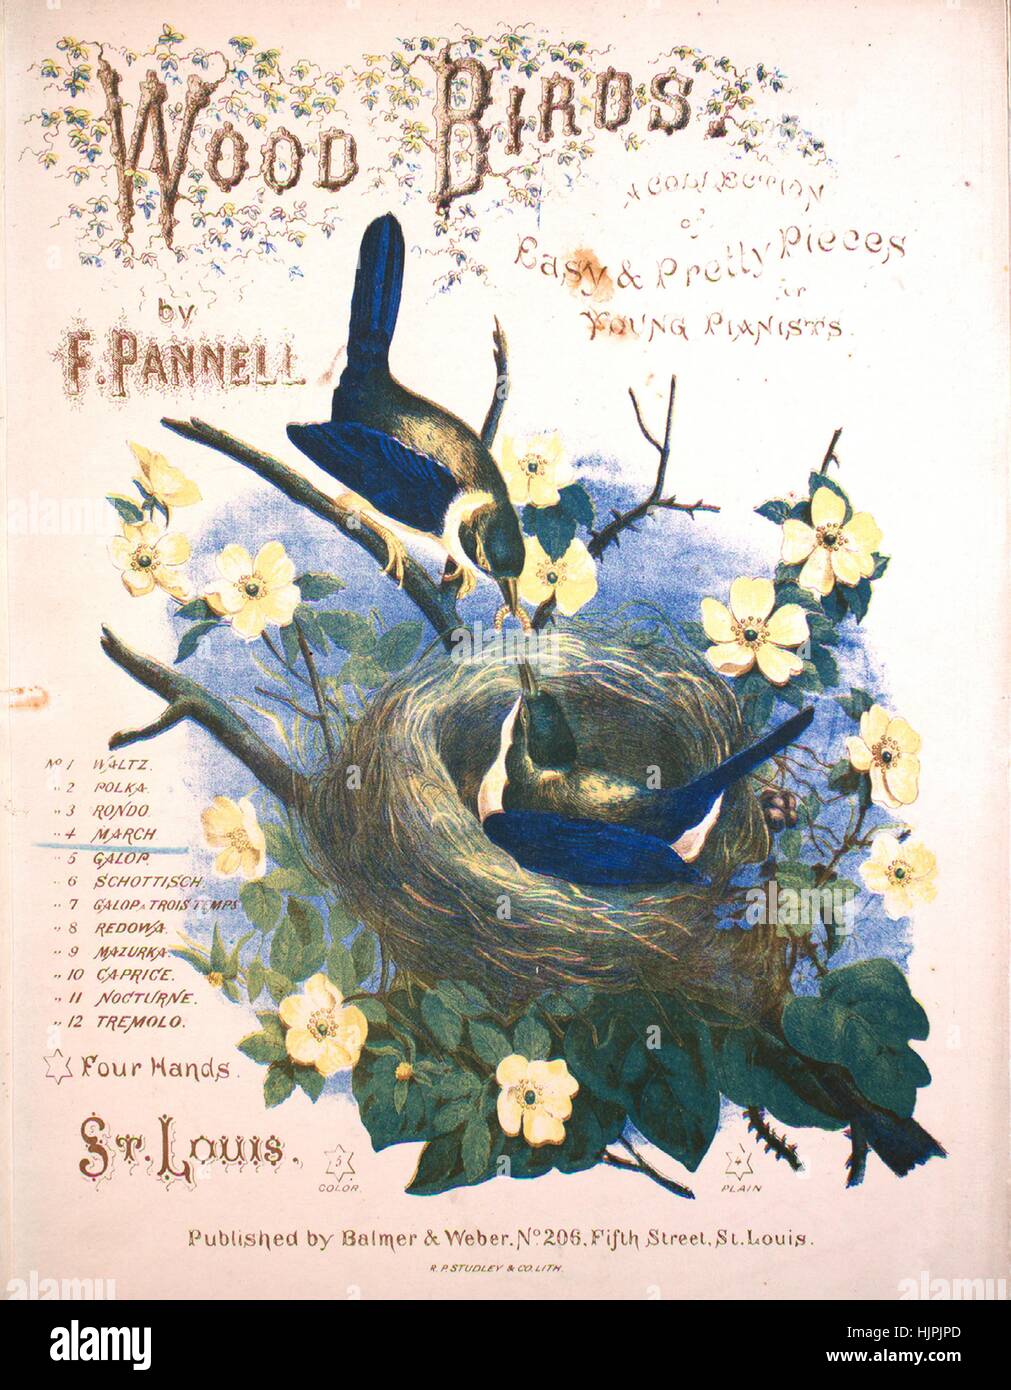 Imagen de cubierta de partituras de la canción "Madera aves una colección  de piezas sencillas y bonitas para jóvenes pianistas de Marzo", con notas  de autoría original leyendo 'Por F Pannell', 1869.